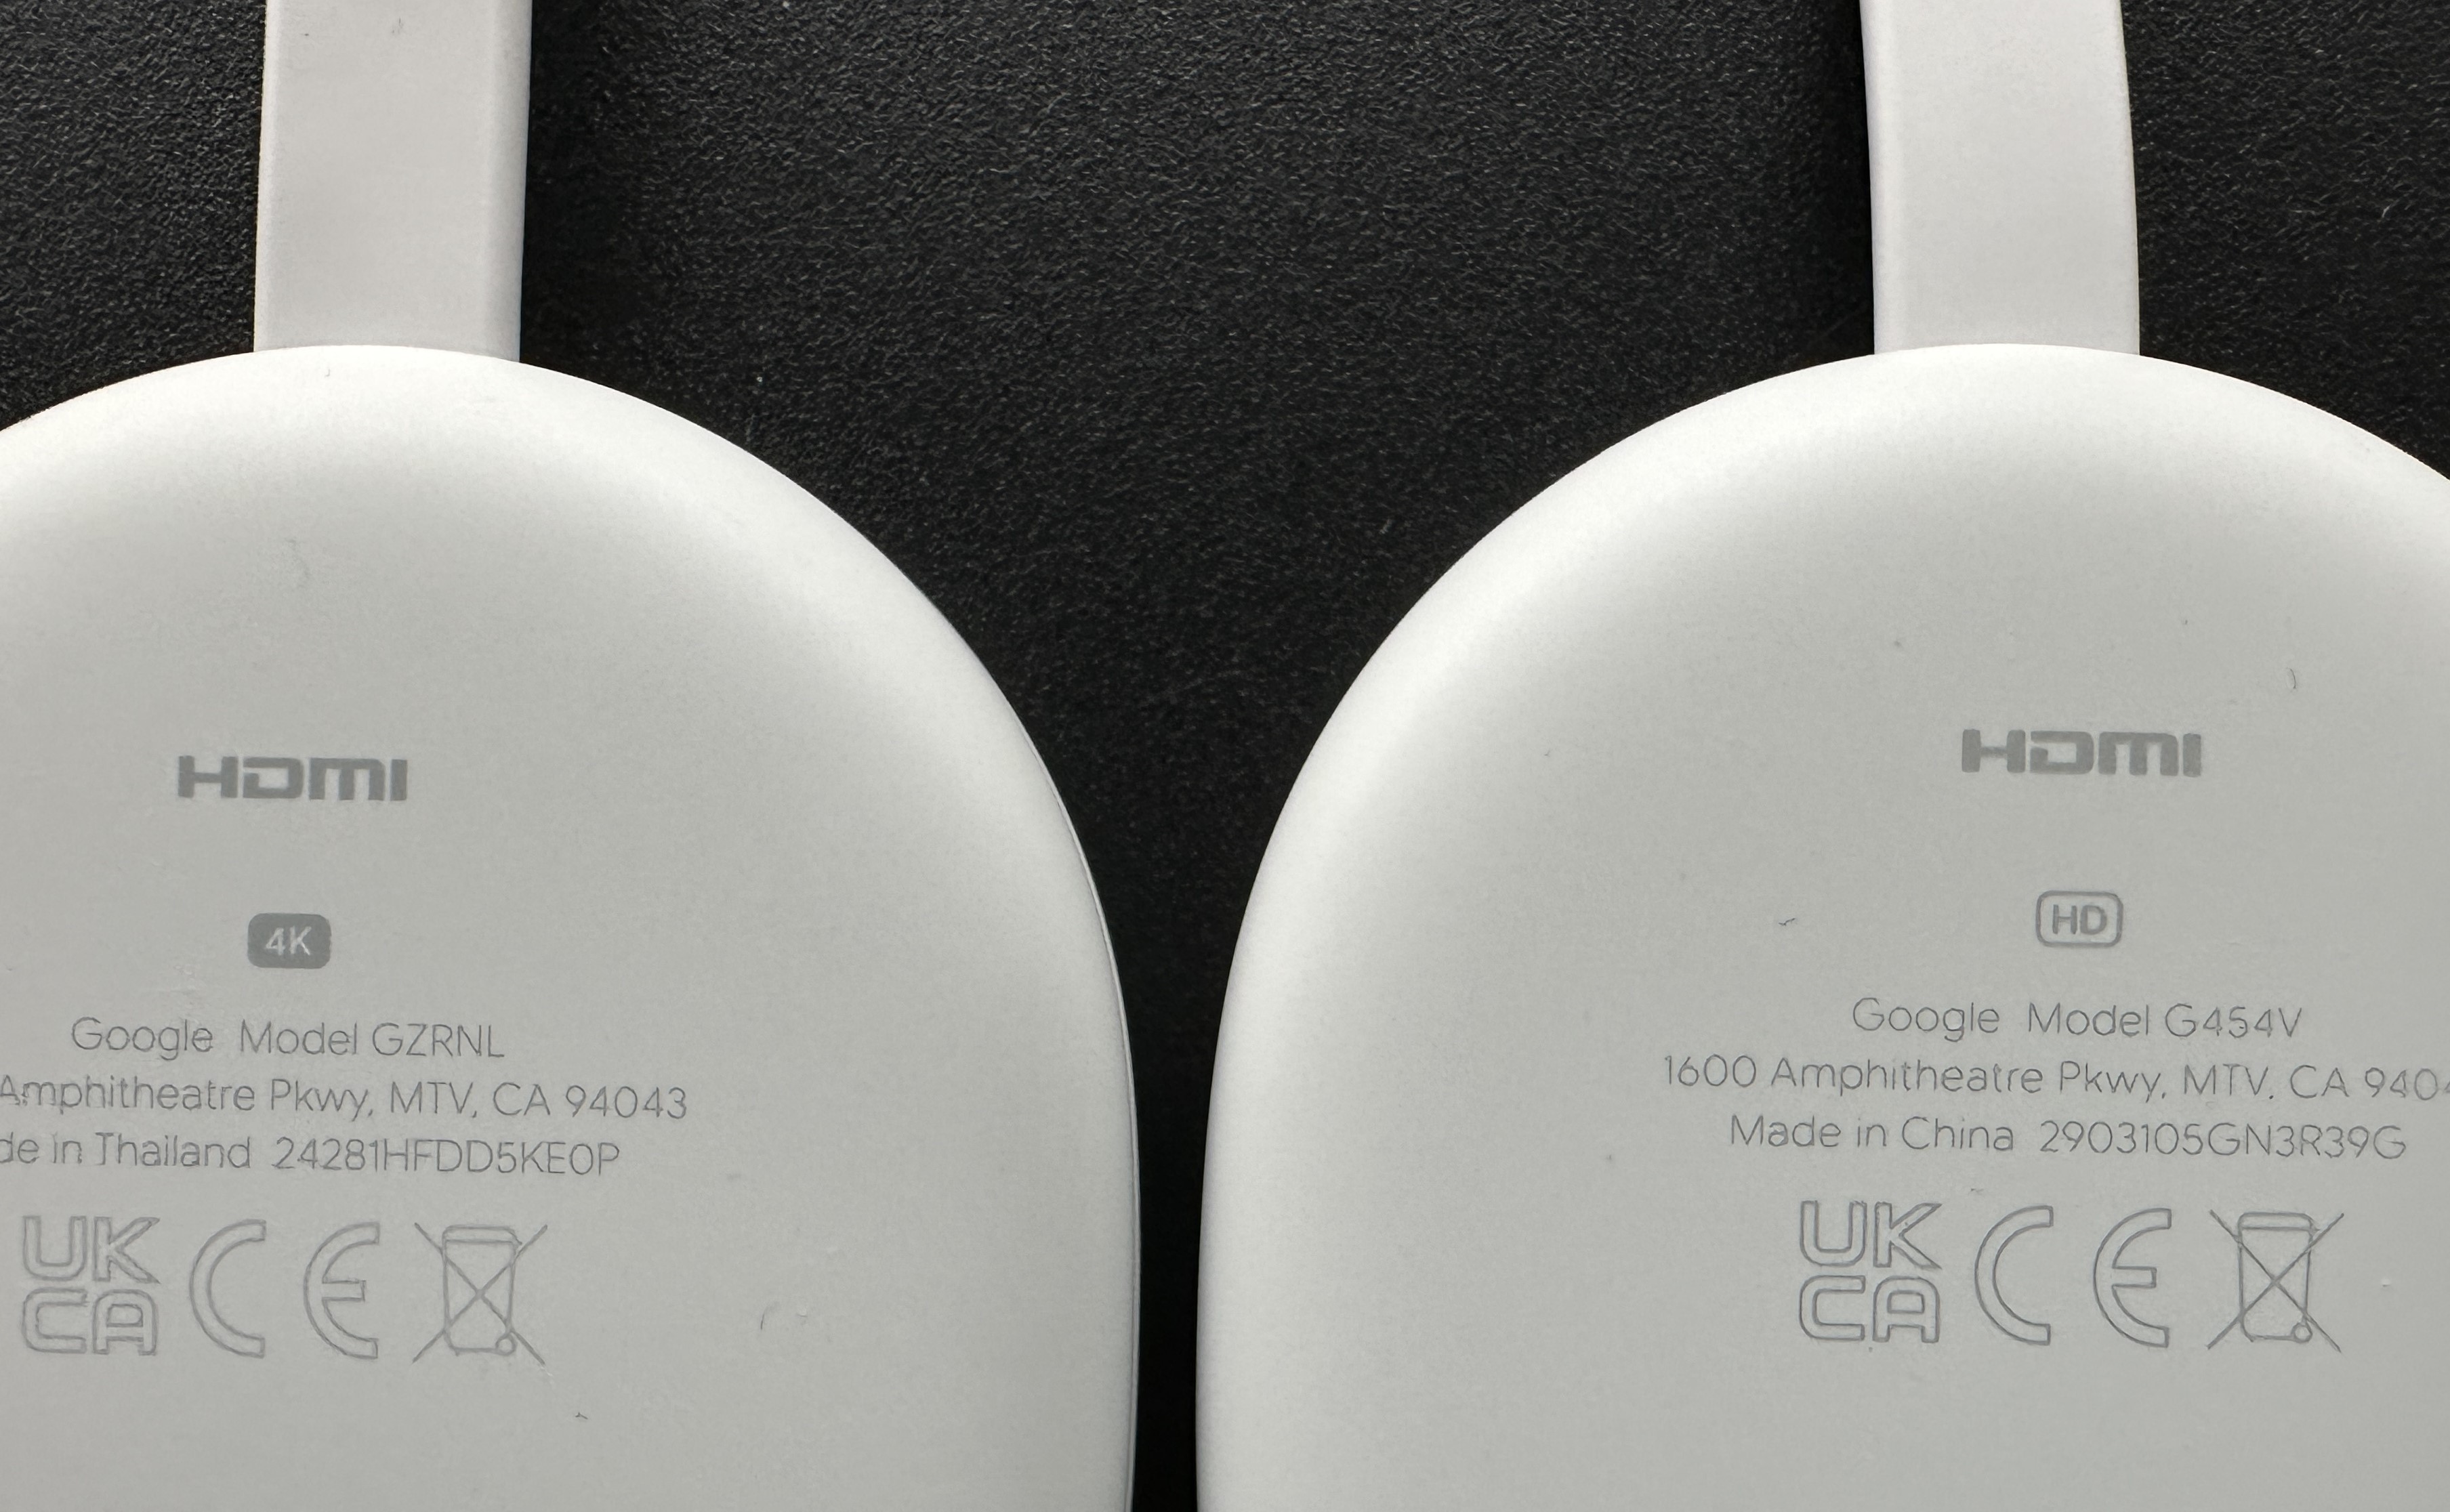 Chromecast mit Google TV 4k vs. Chromecast mit Google HD: Was ist der Unterschied?